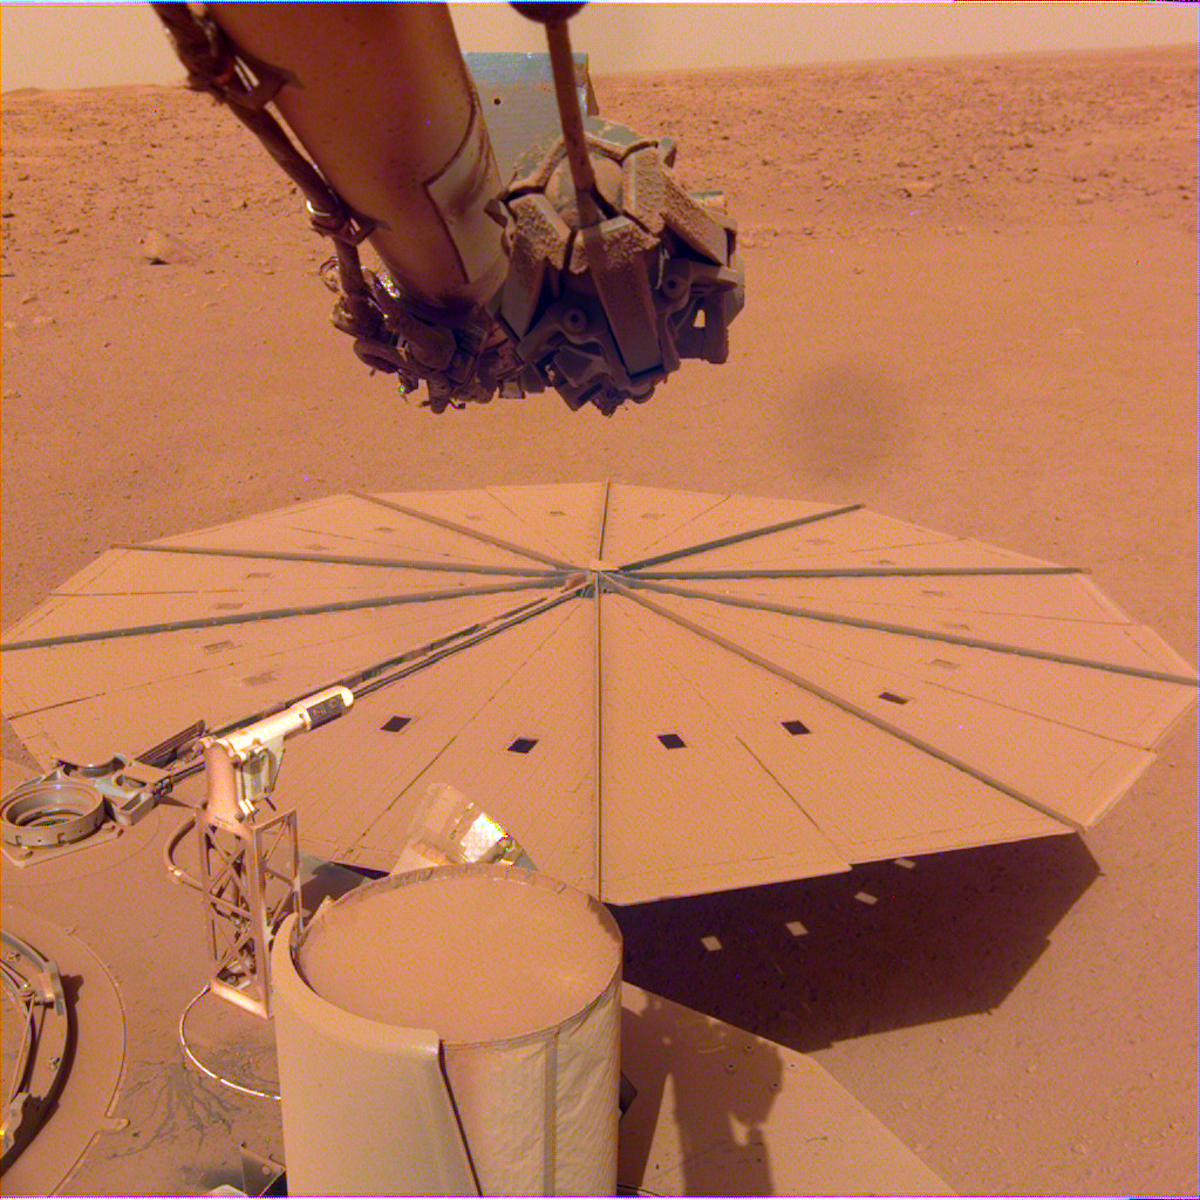 Un panel solar circular cubierto de polvo rojo en Marte